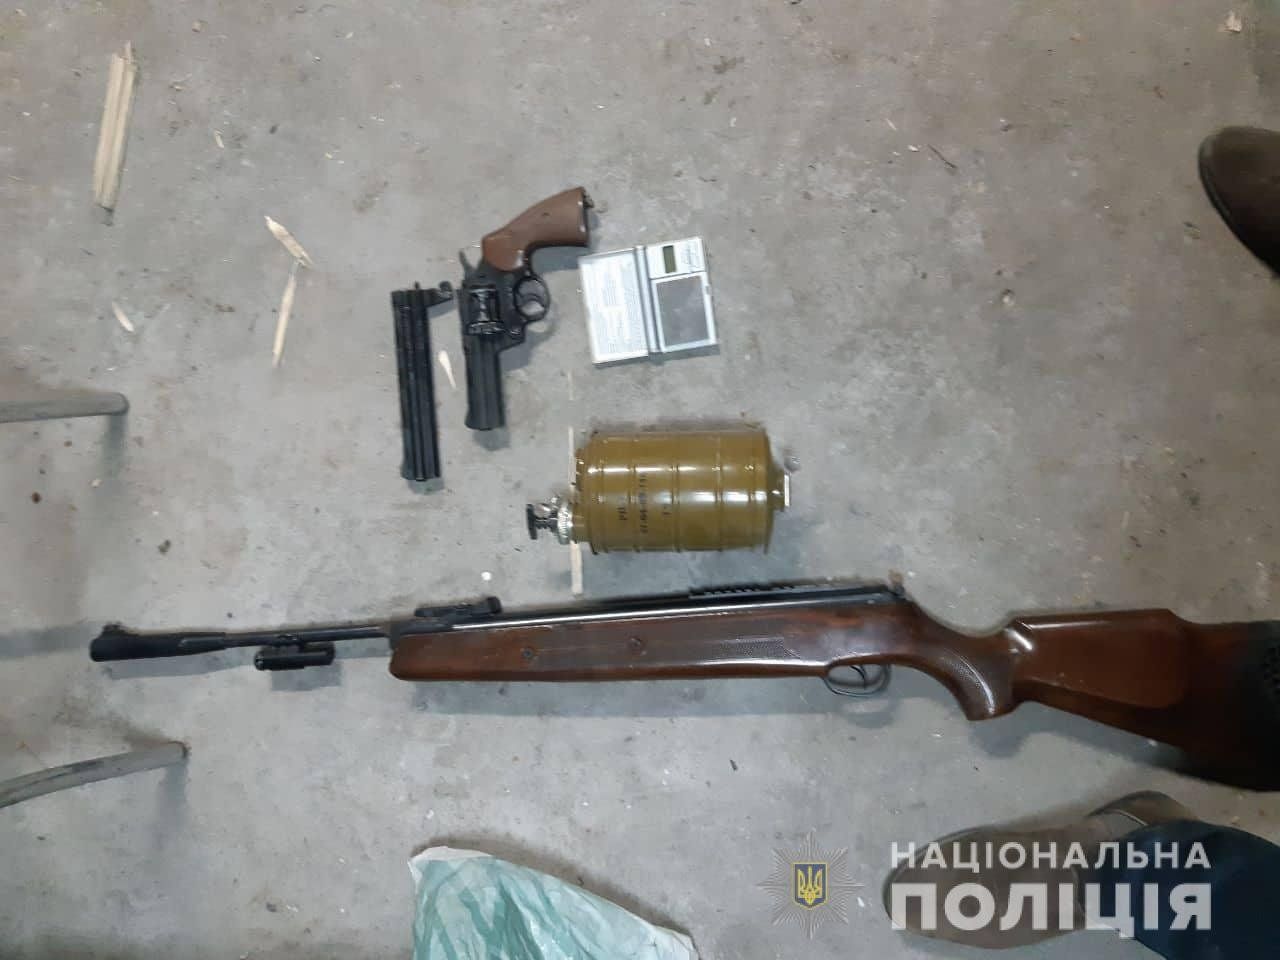 Поліція Закарпаття вилучила в жителя села Галоч біля Ужгорода зброю, вибухівку та наркотики